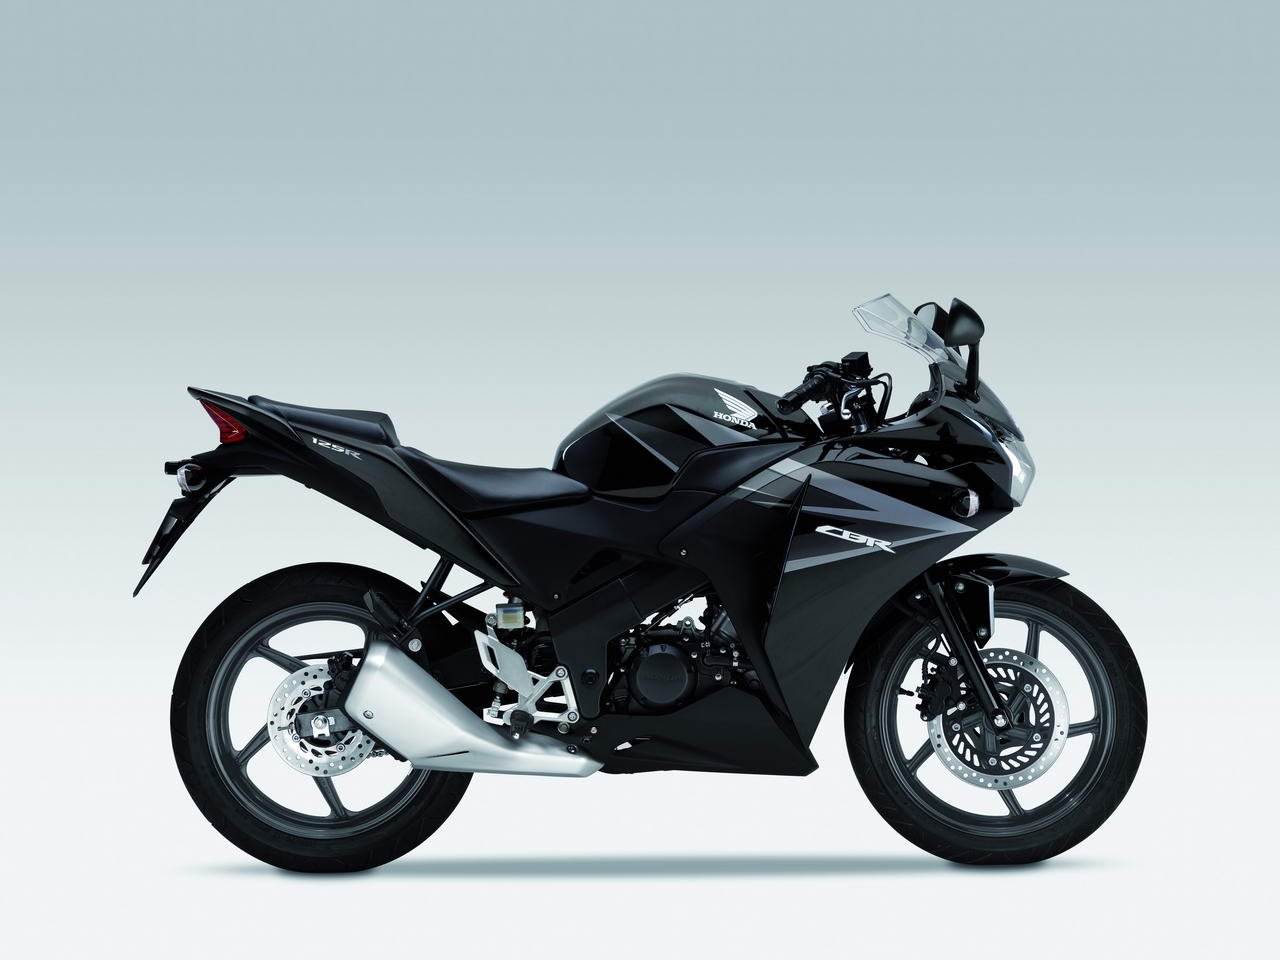 Listino Honda CBF 125 Moto 50 e 125 - image 14656_honda-cbr125-r on https://moto.motori.net